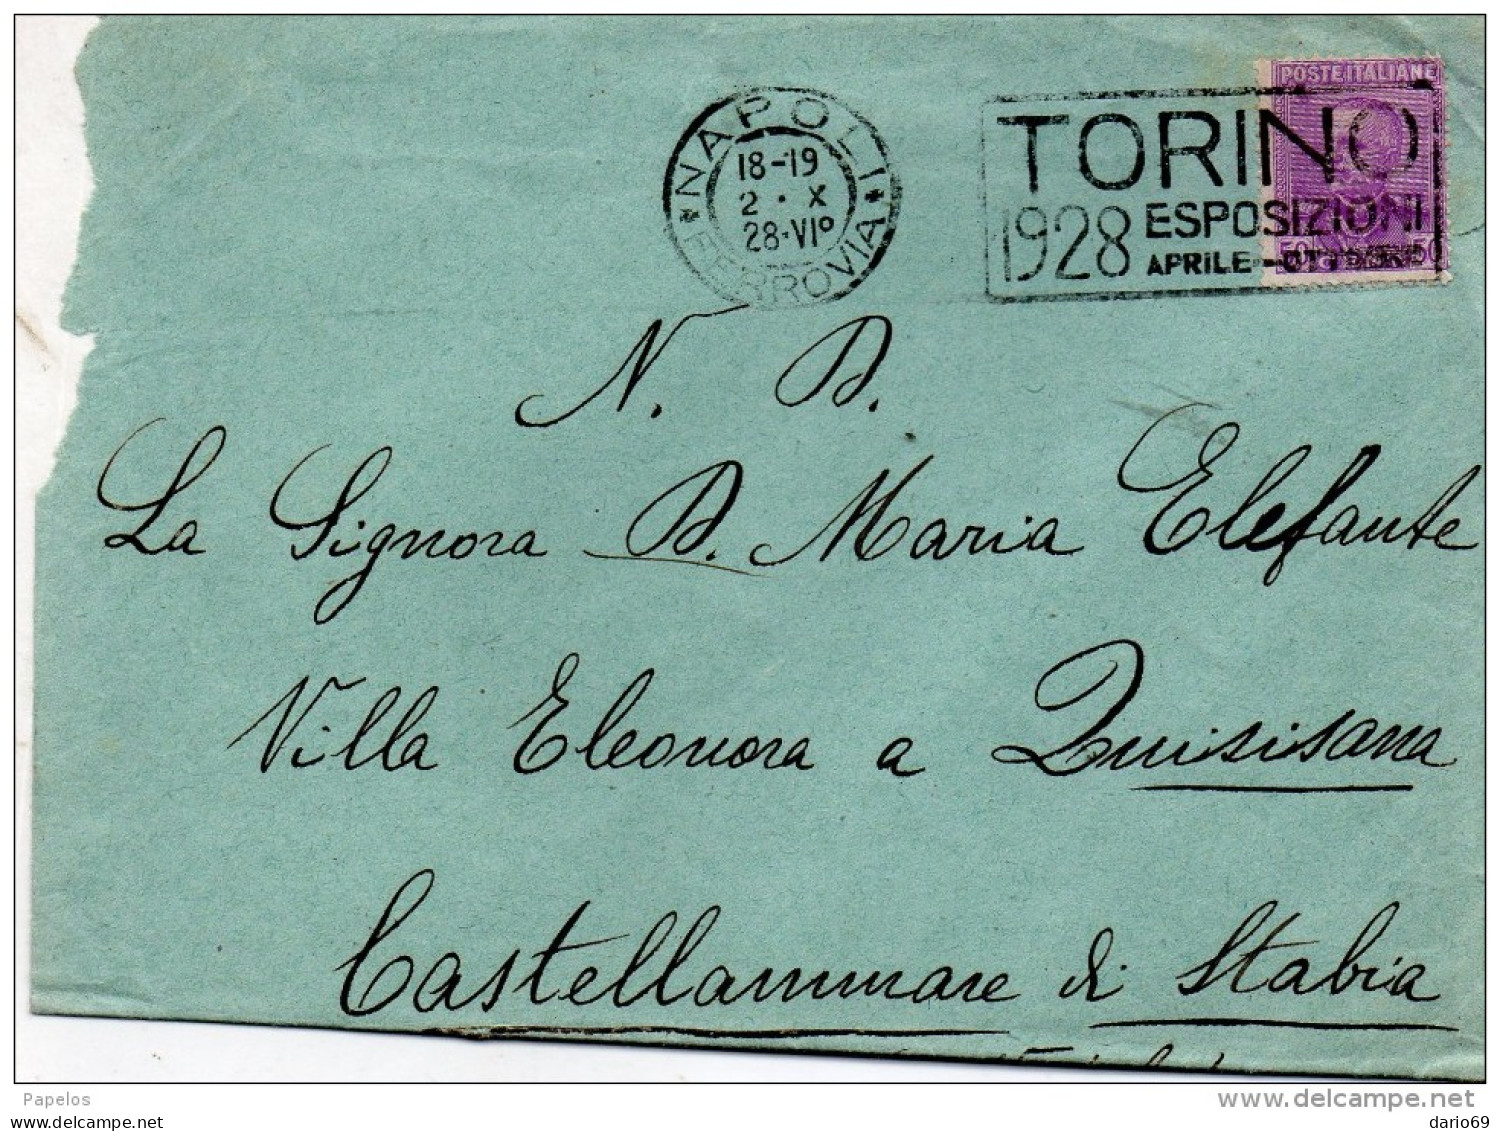 1928 LETTERA CON ANNULLO  NAPOLI + TARGHETTA   TORINO 1928 ESPOSIZIONI - Marcophilie